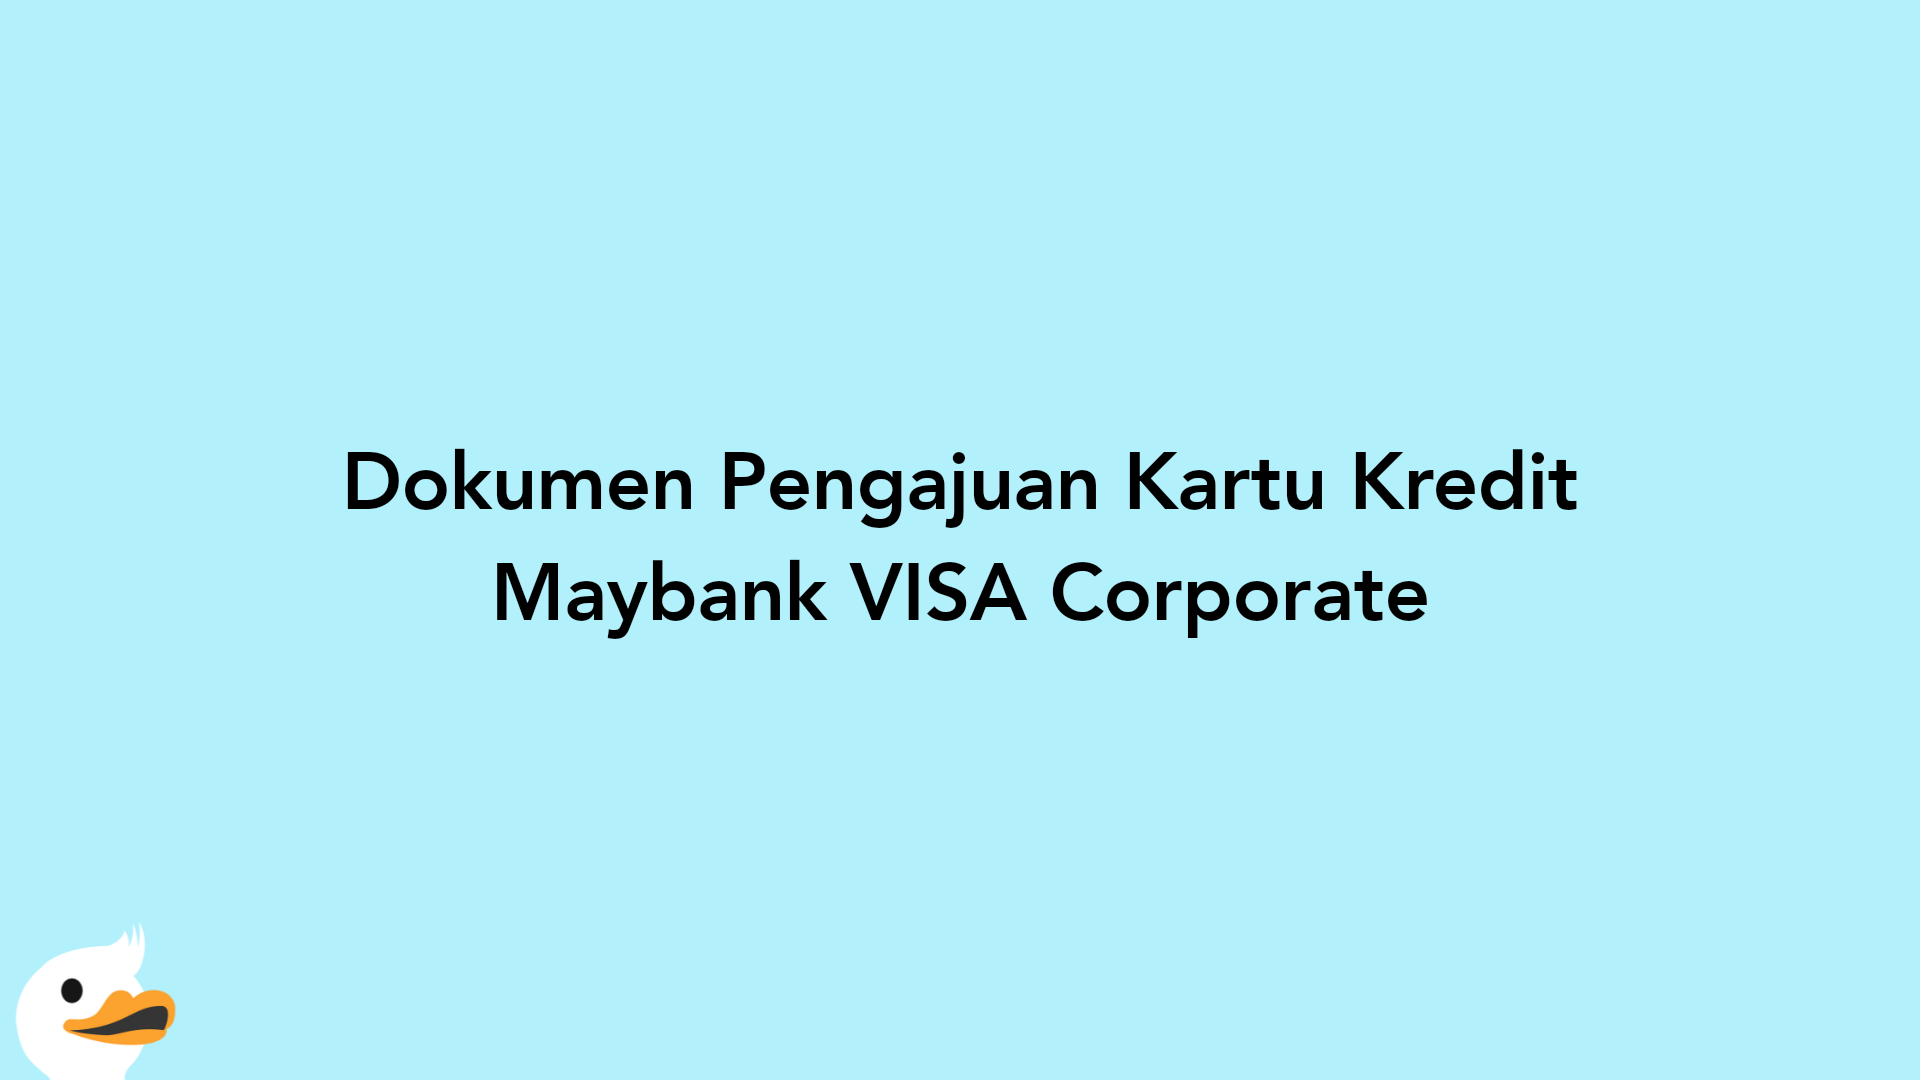 Dokumen Pengajuan Kartu Kredit Maybank VISA Corporate